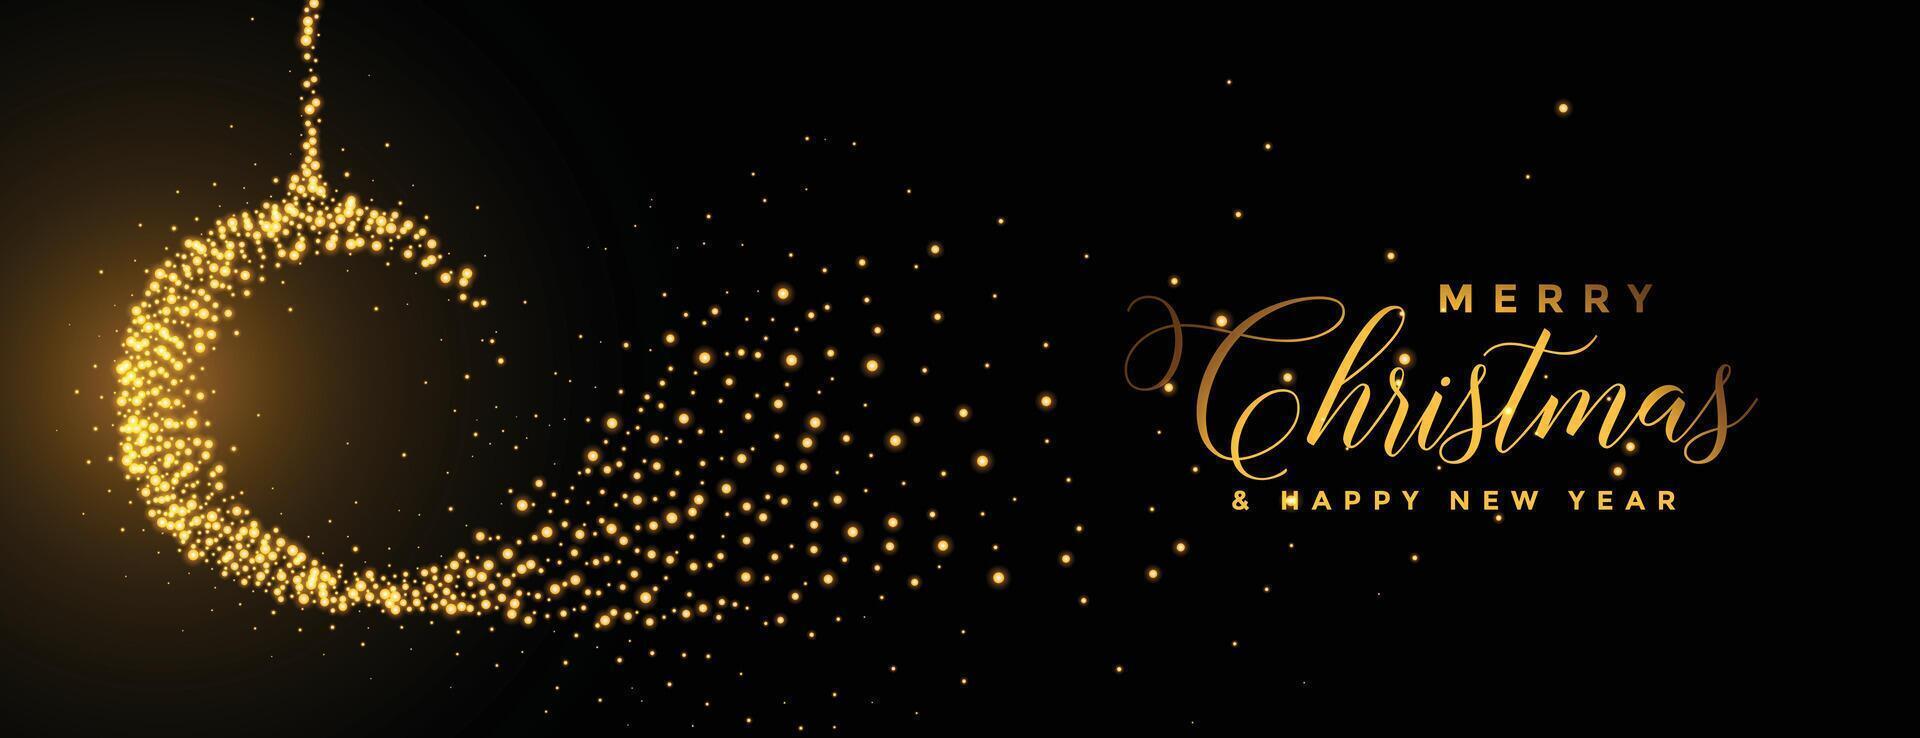 merry christmas sparkles ball golden festival banner vector